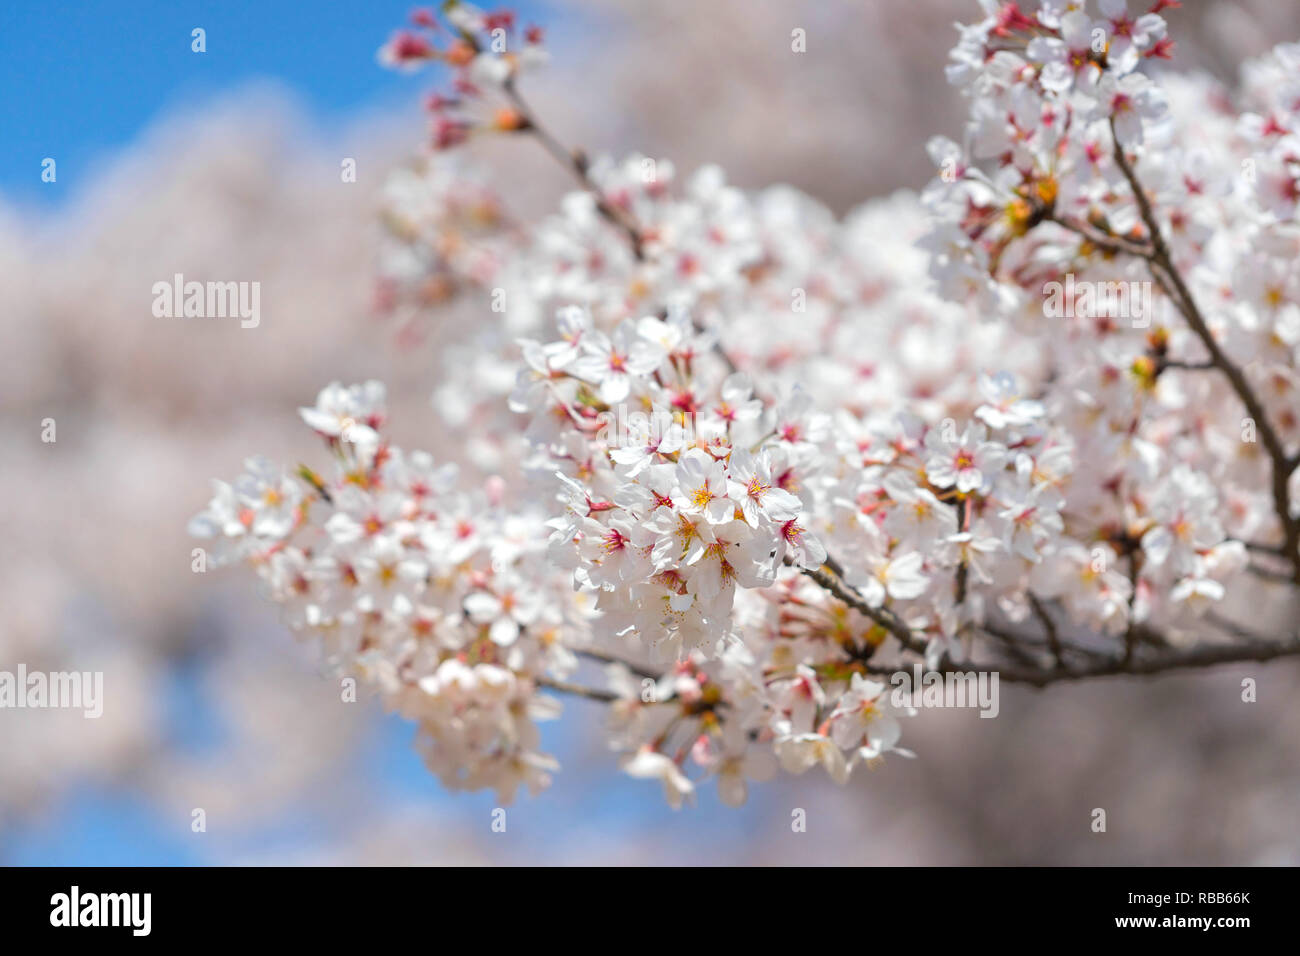 Cherry blossom season in Showa Kinen Koen at Kyoto,Japan. Stock Photo